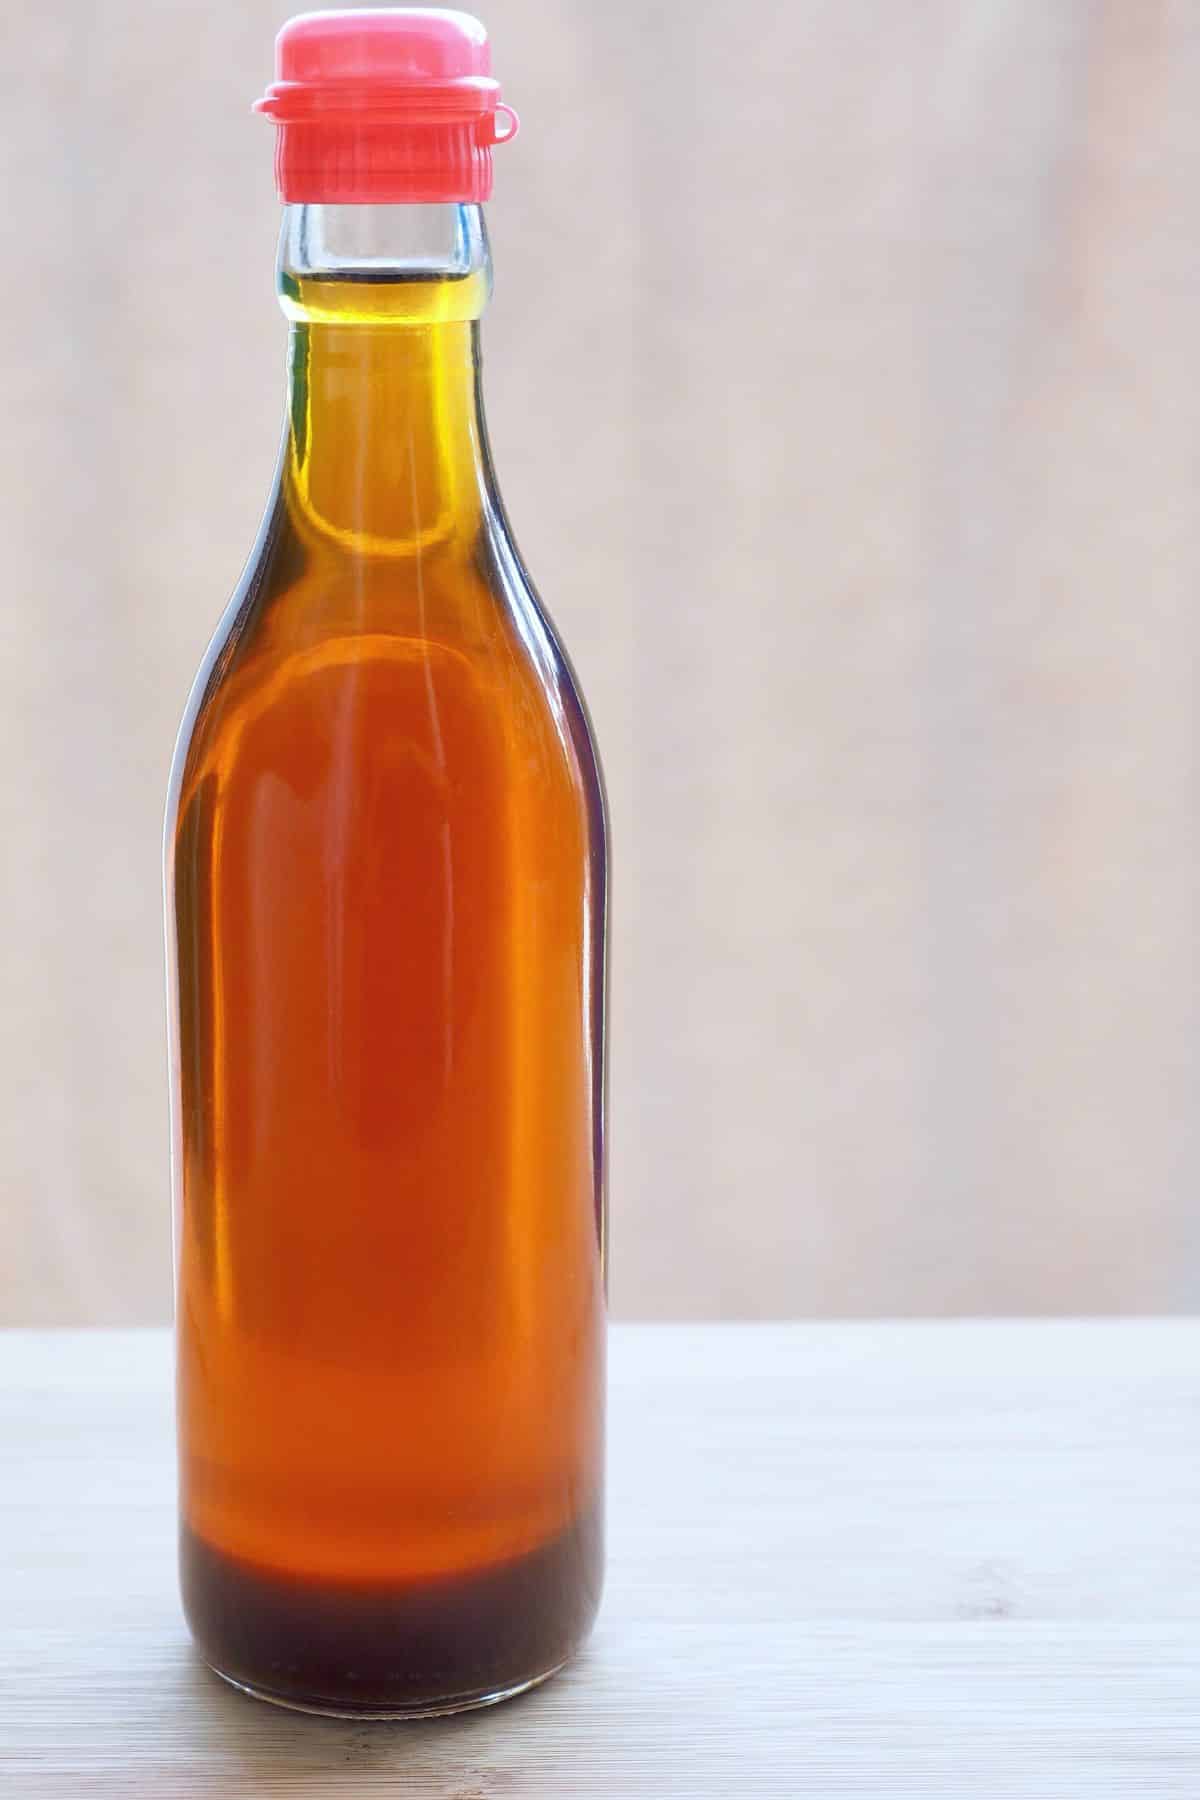 A bottle of sesame oil.